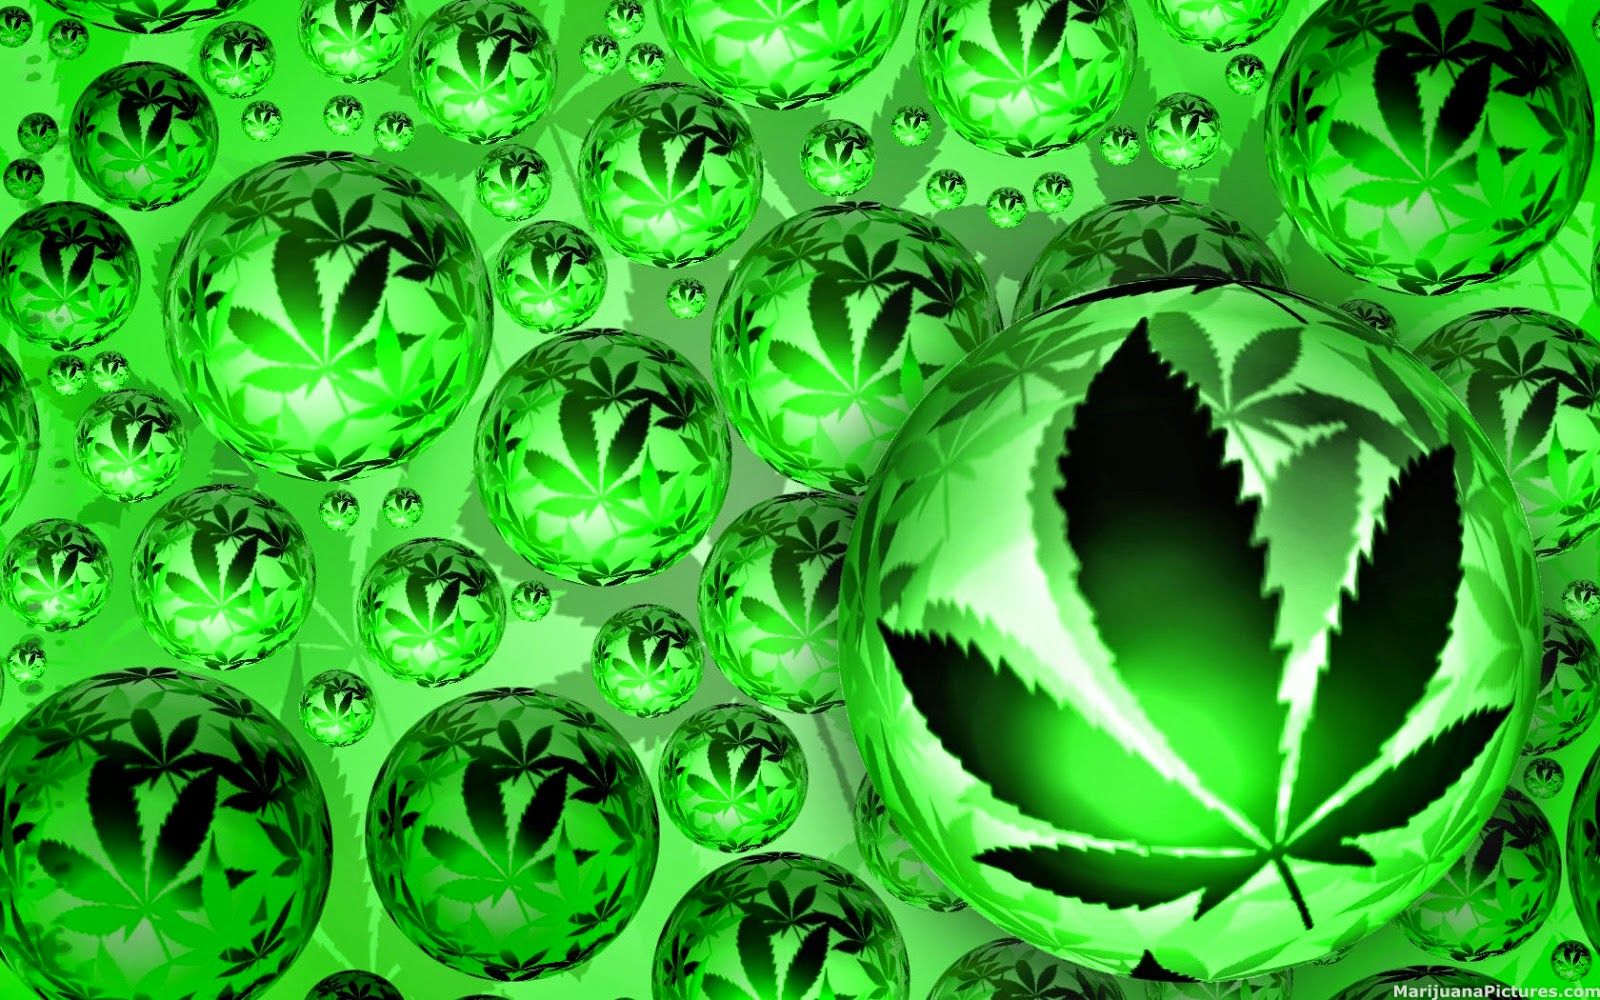 Marijuana wallpaper - Green weed wallpaper WeedBizz